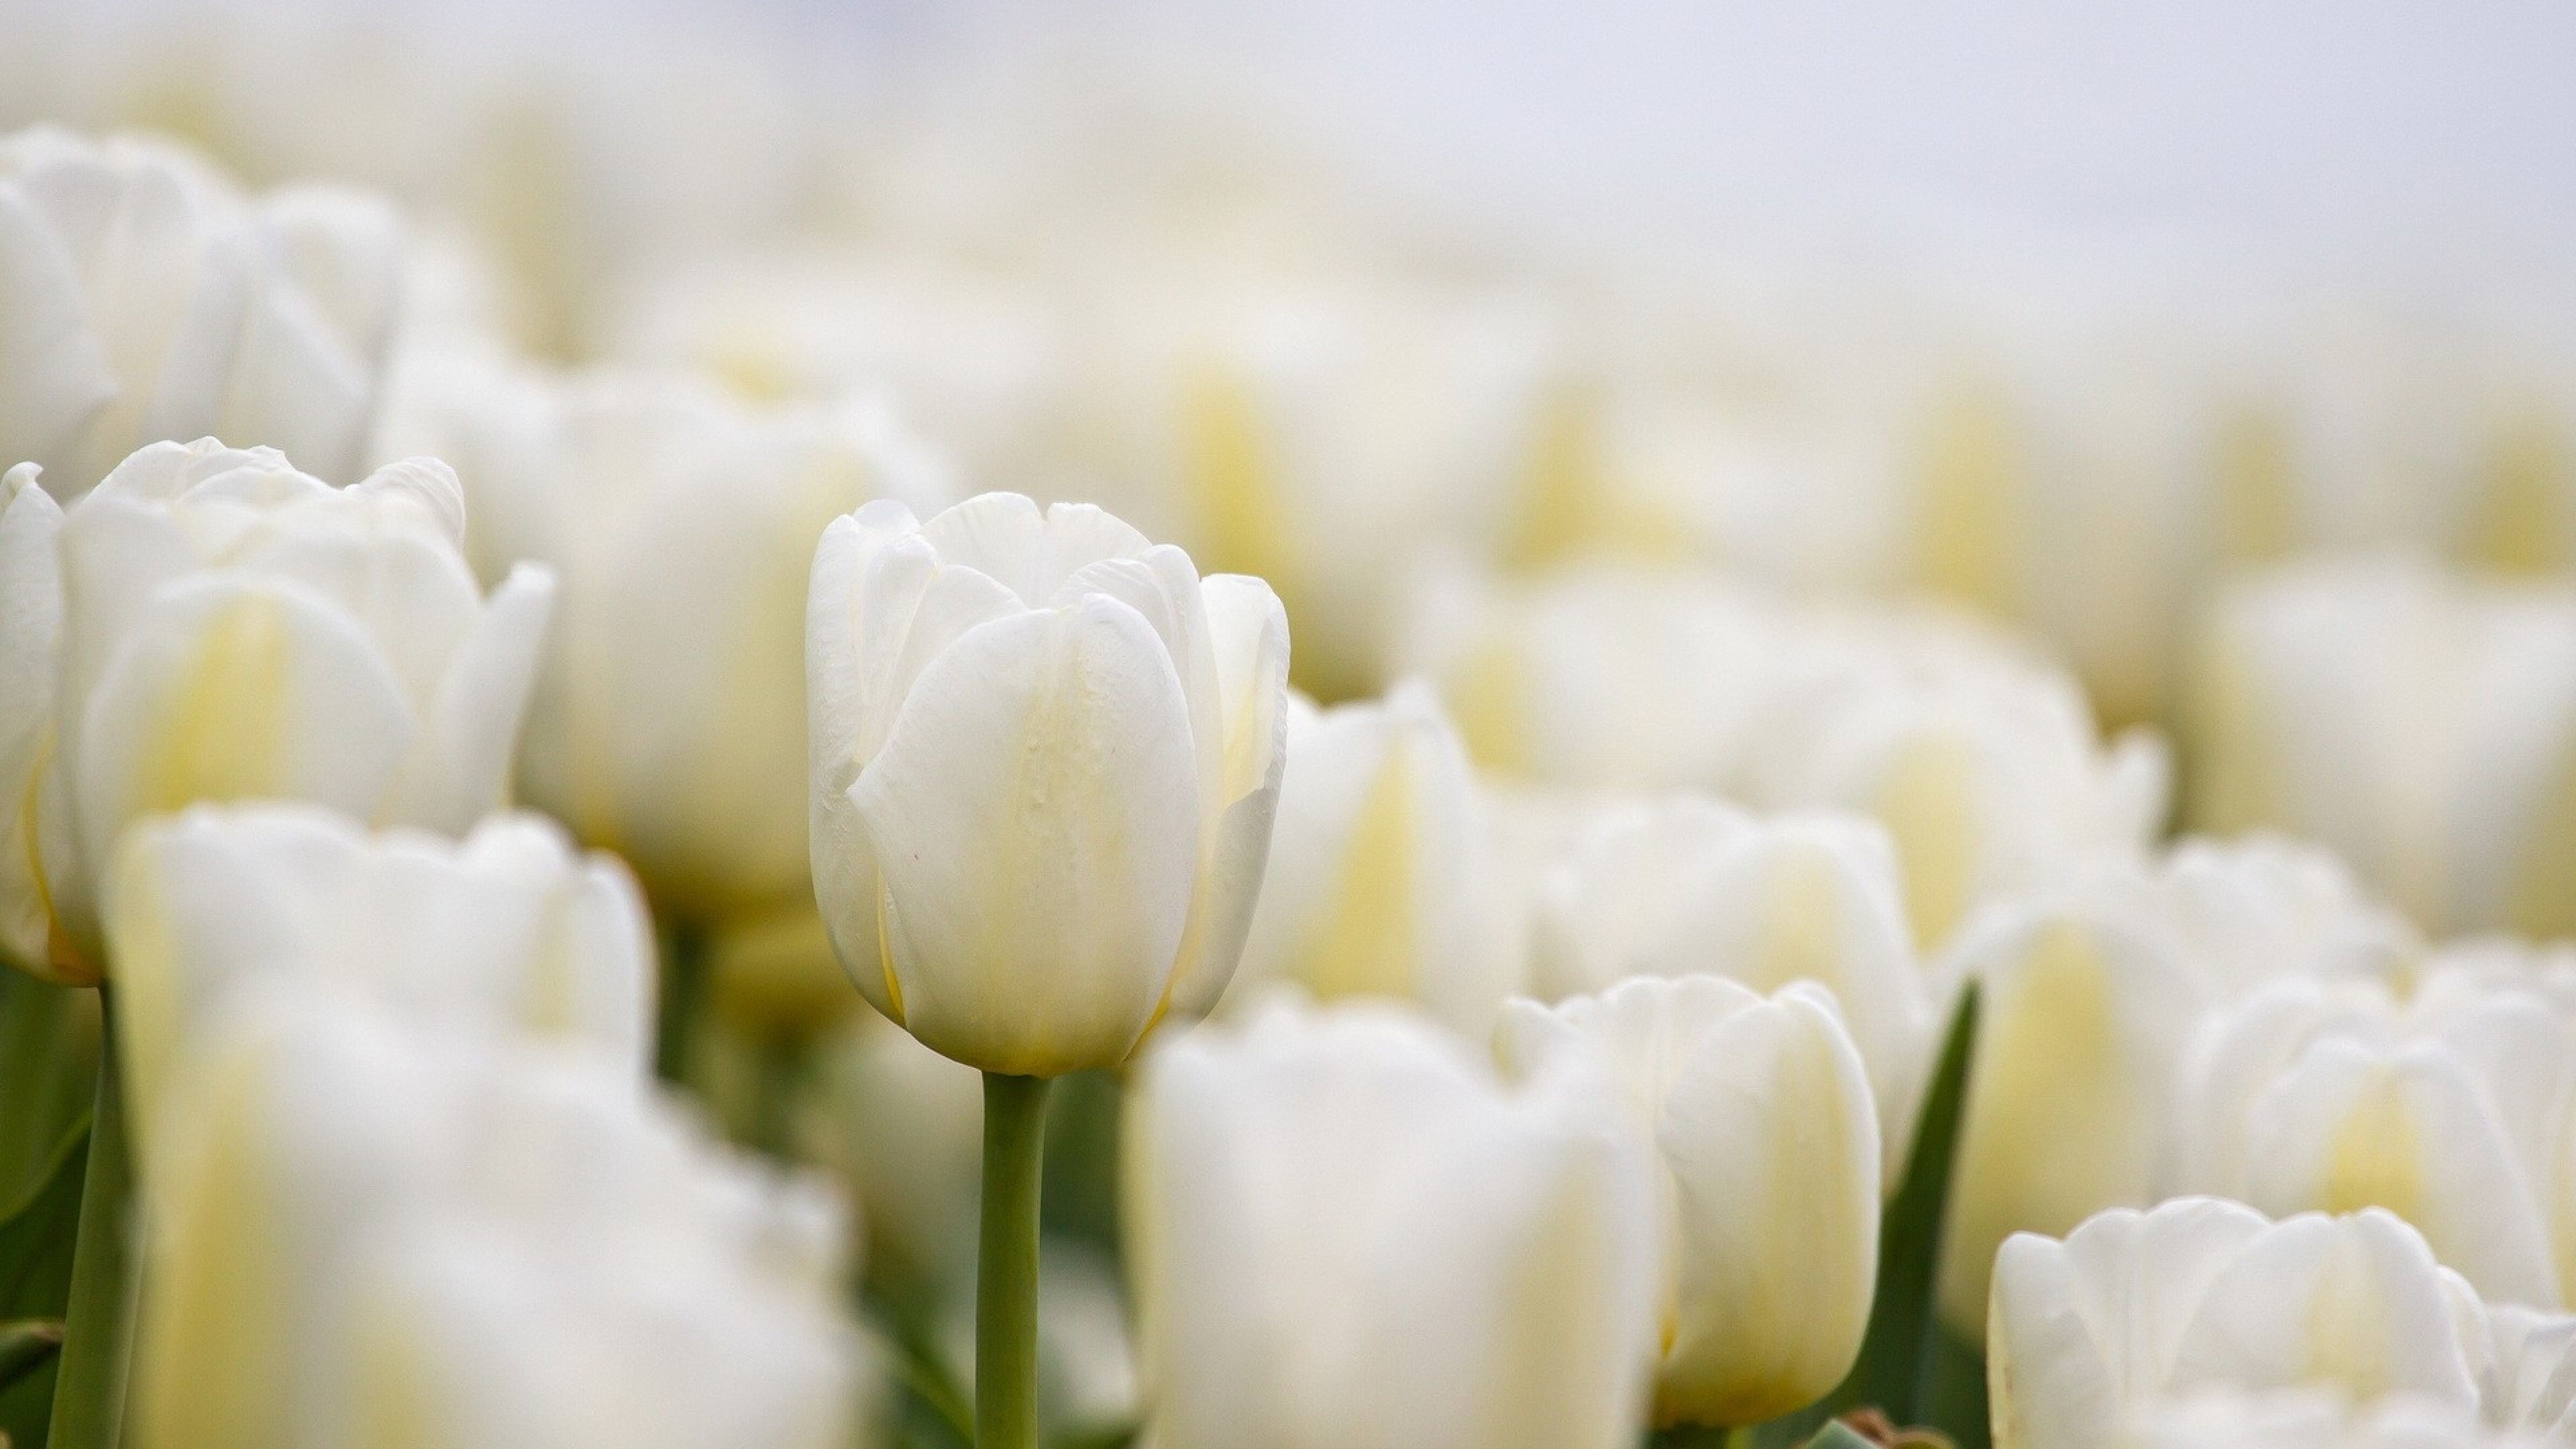 3840x2160 Wallpaper tulips, white, flowers, buds | White | Pinterest ...